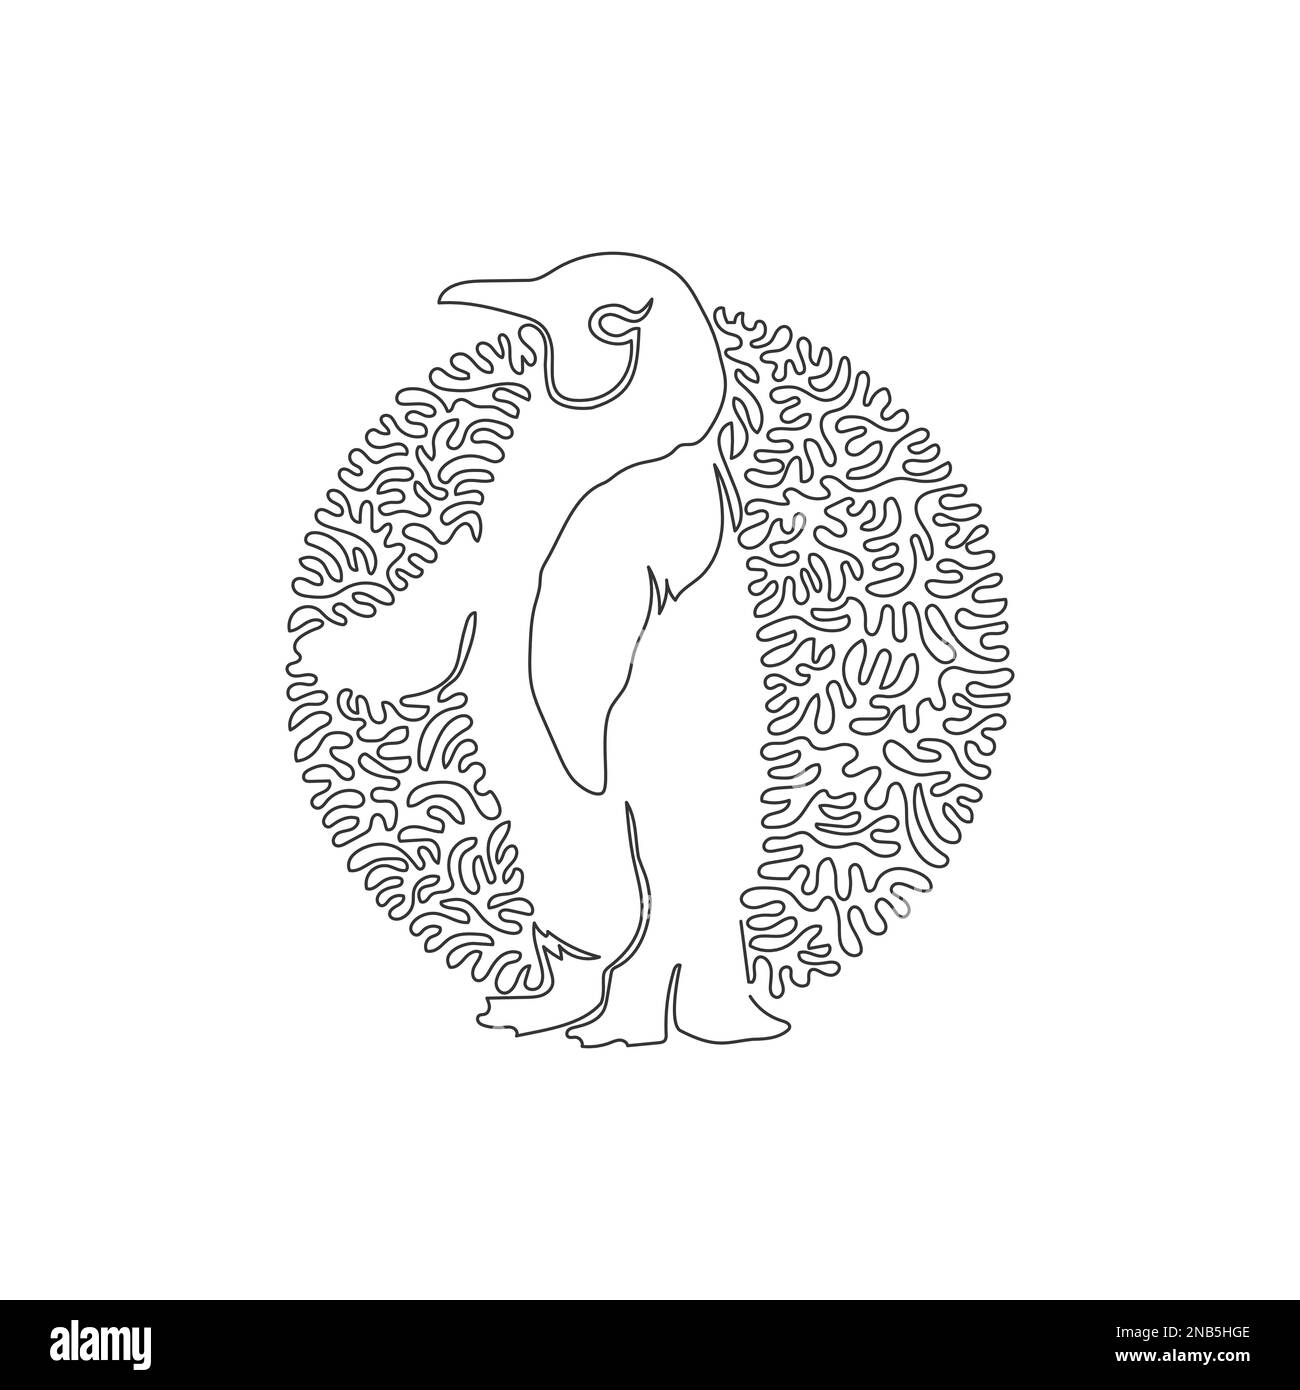 Durchgehende Kurve eine Linienzeichnung des stehenden Pinguins. Abstrakte Kunst im Kreis. Einzeilige editierbare Strichvektordarstellung des süßen Pinguins Stock Vektor